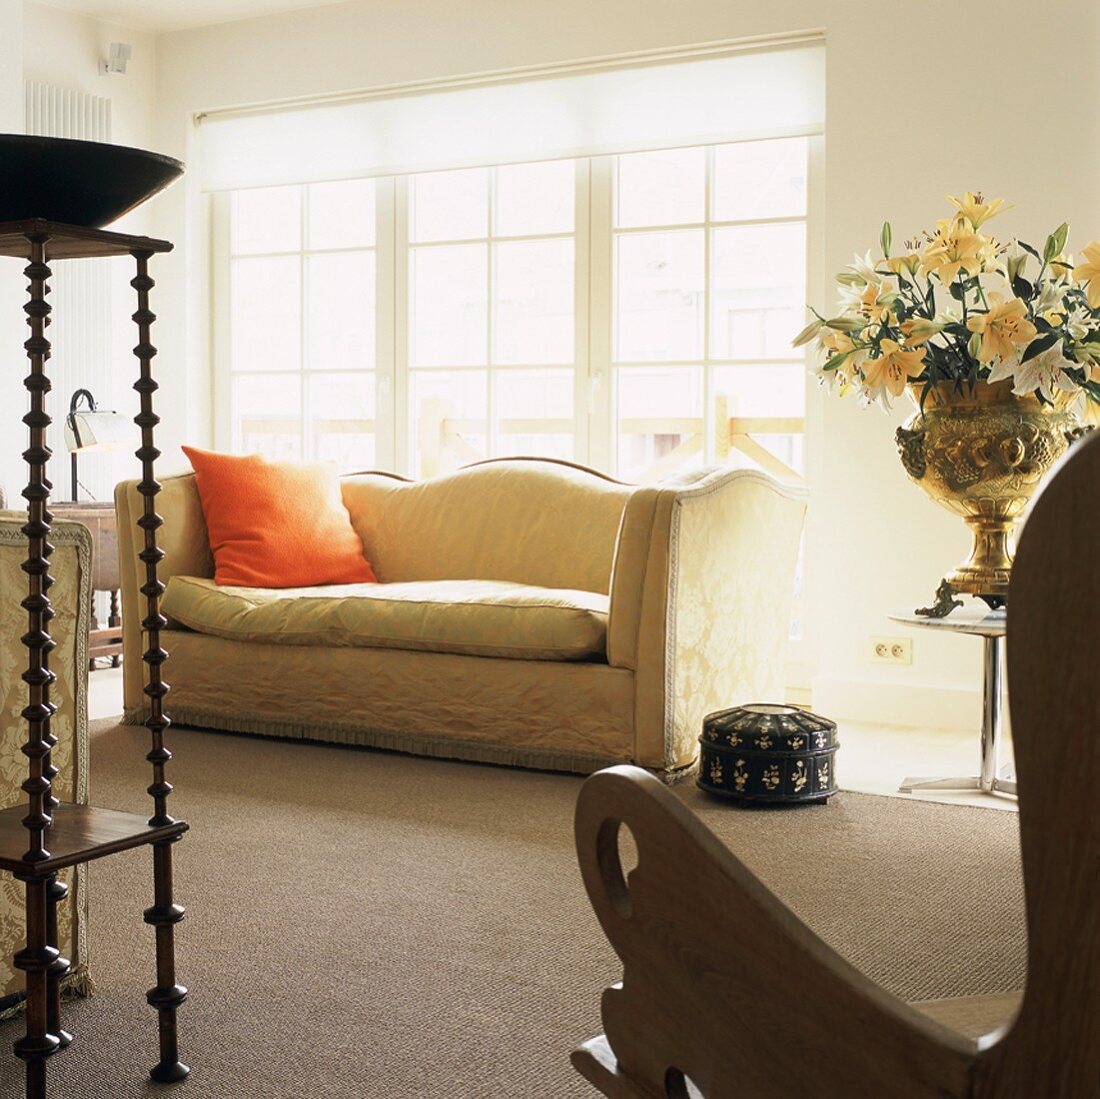 Elegante Antikmöbel im Wohnzimmer mit Zugang zum Balkon durch breite Sprossentüren